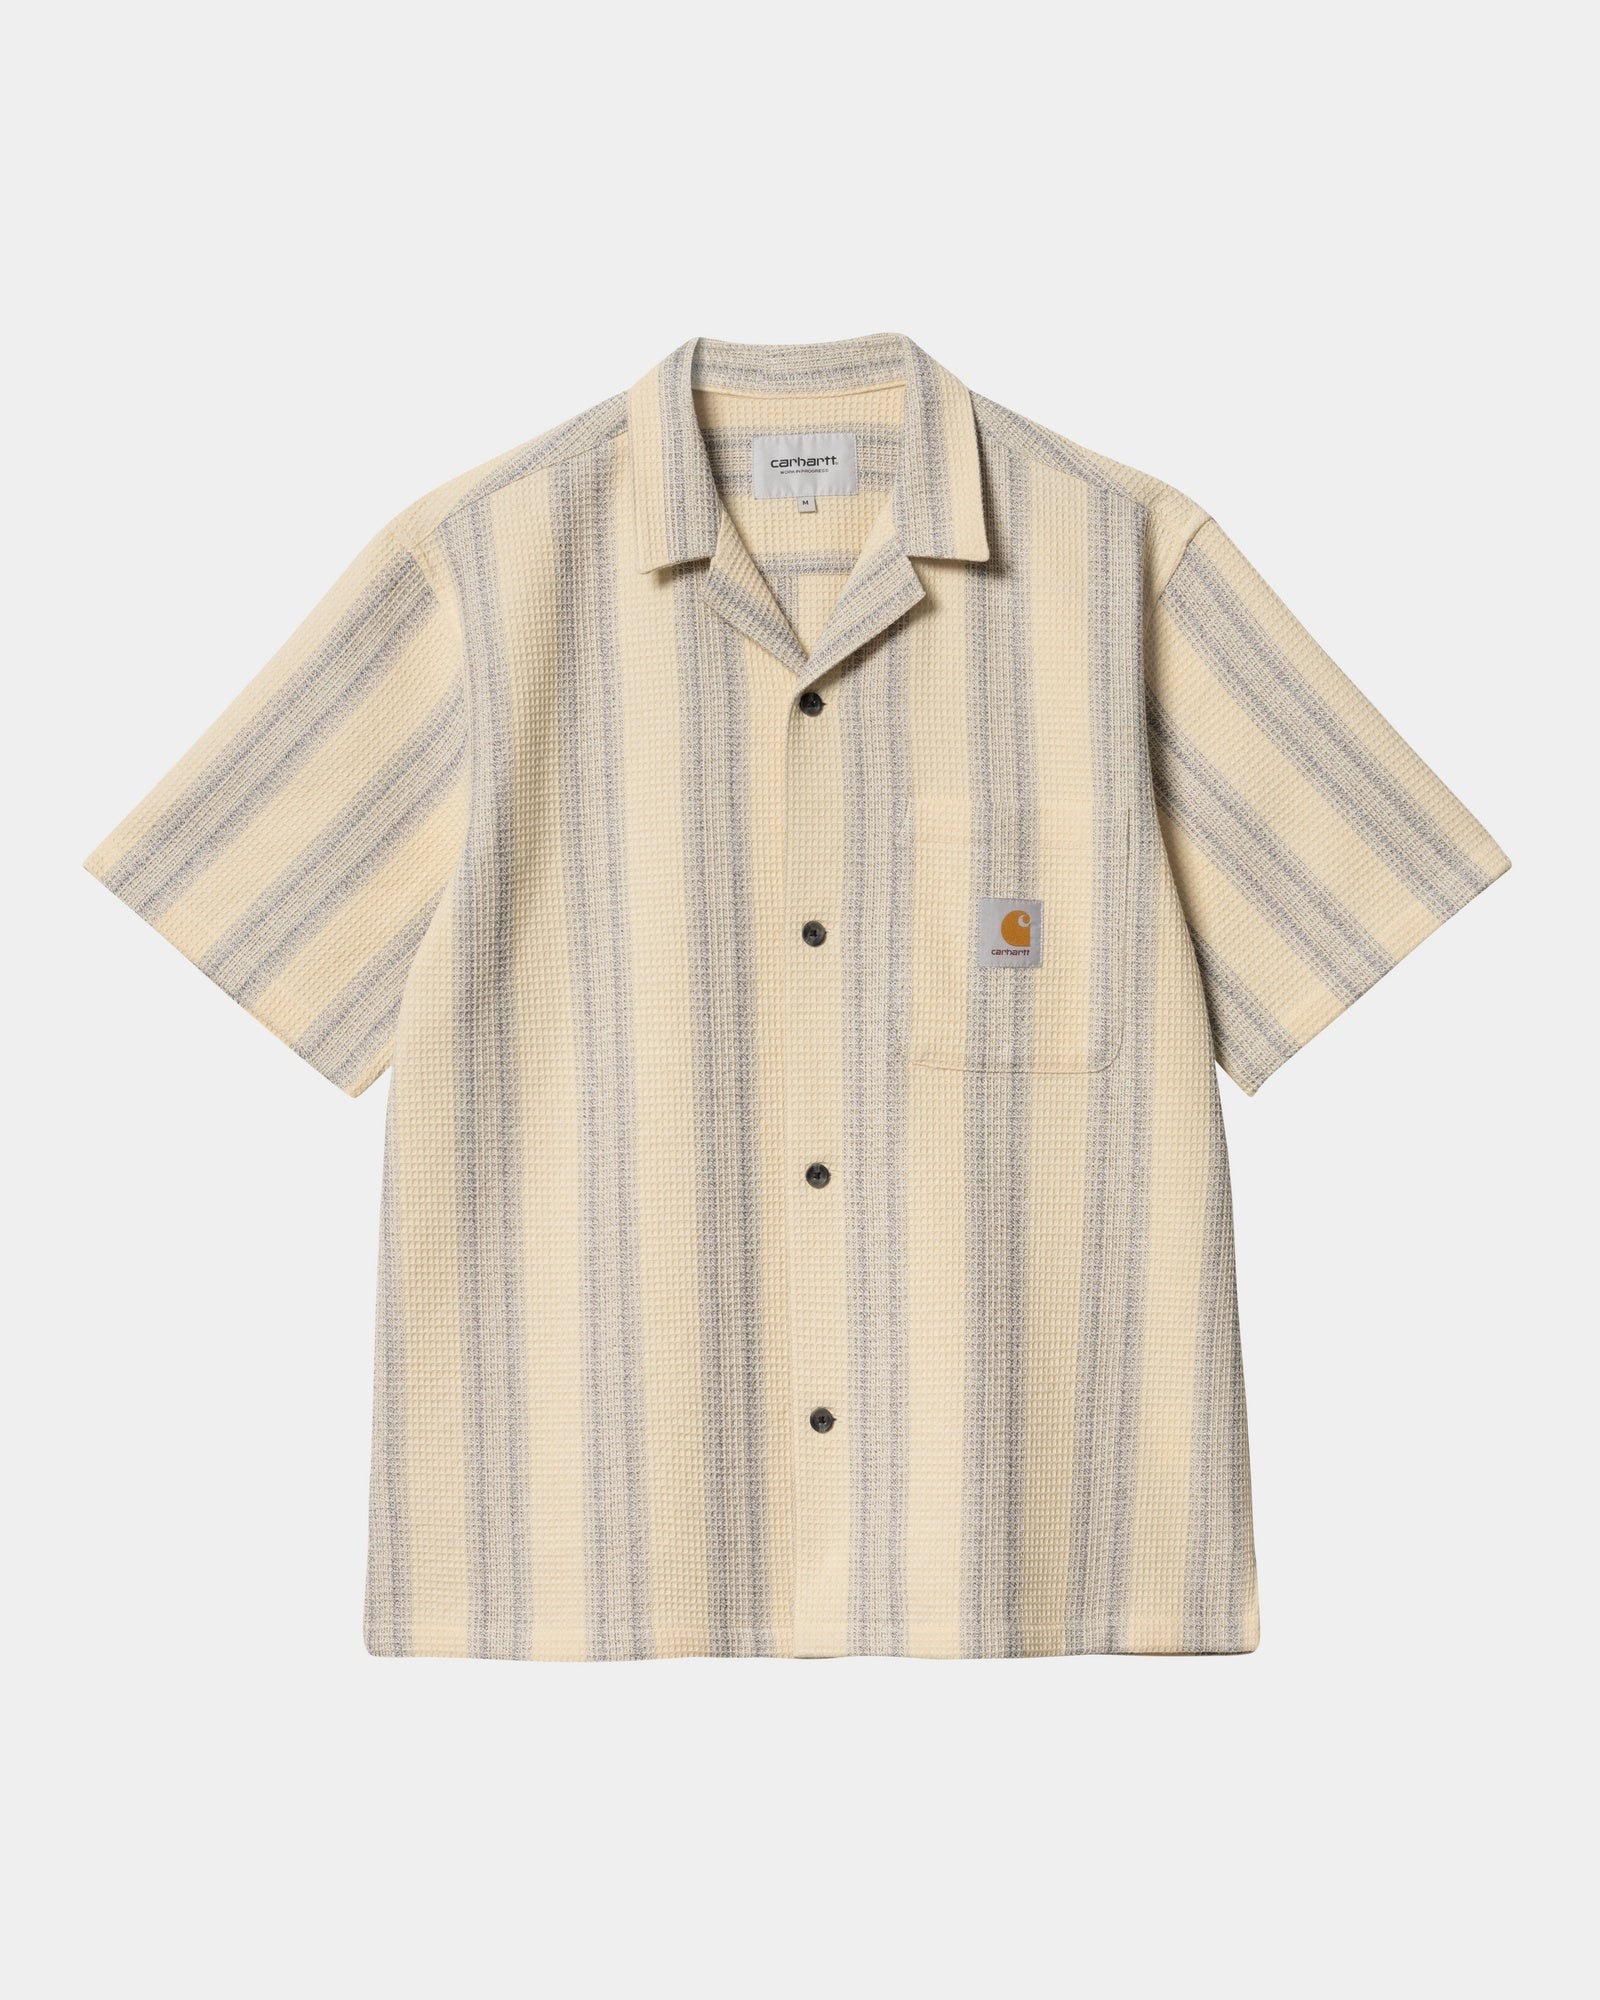 칼하트WIP Carhartt Dodson Stripe Shirt,Natural